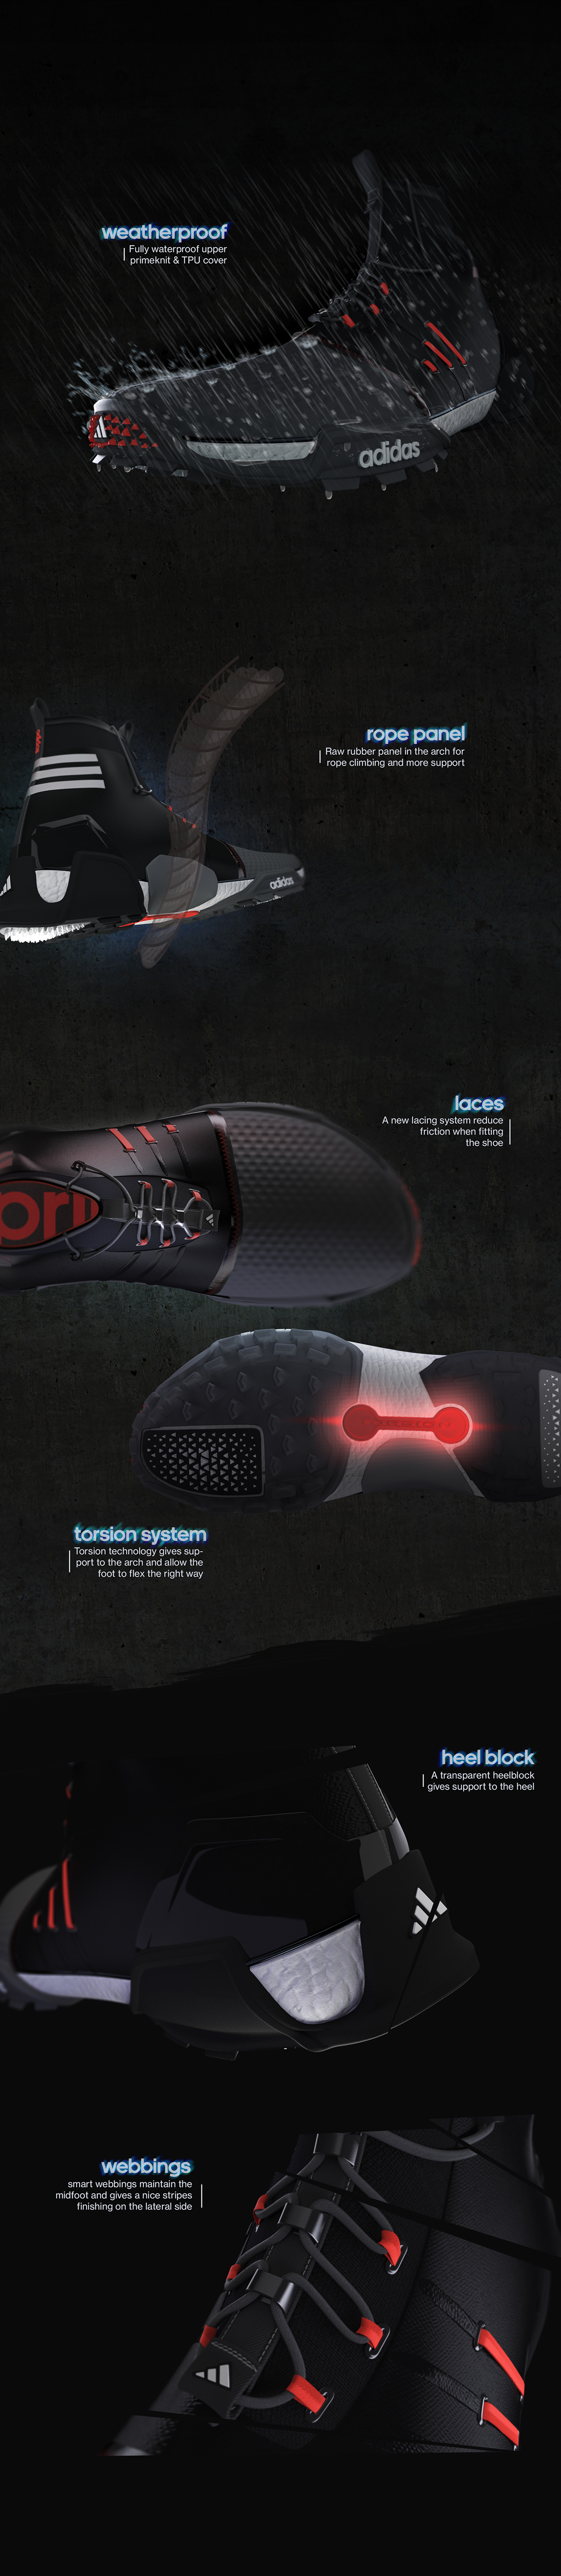 footwear design adidas boost sketch 3D rendering industrial+design digital rendering photoshop